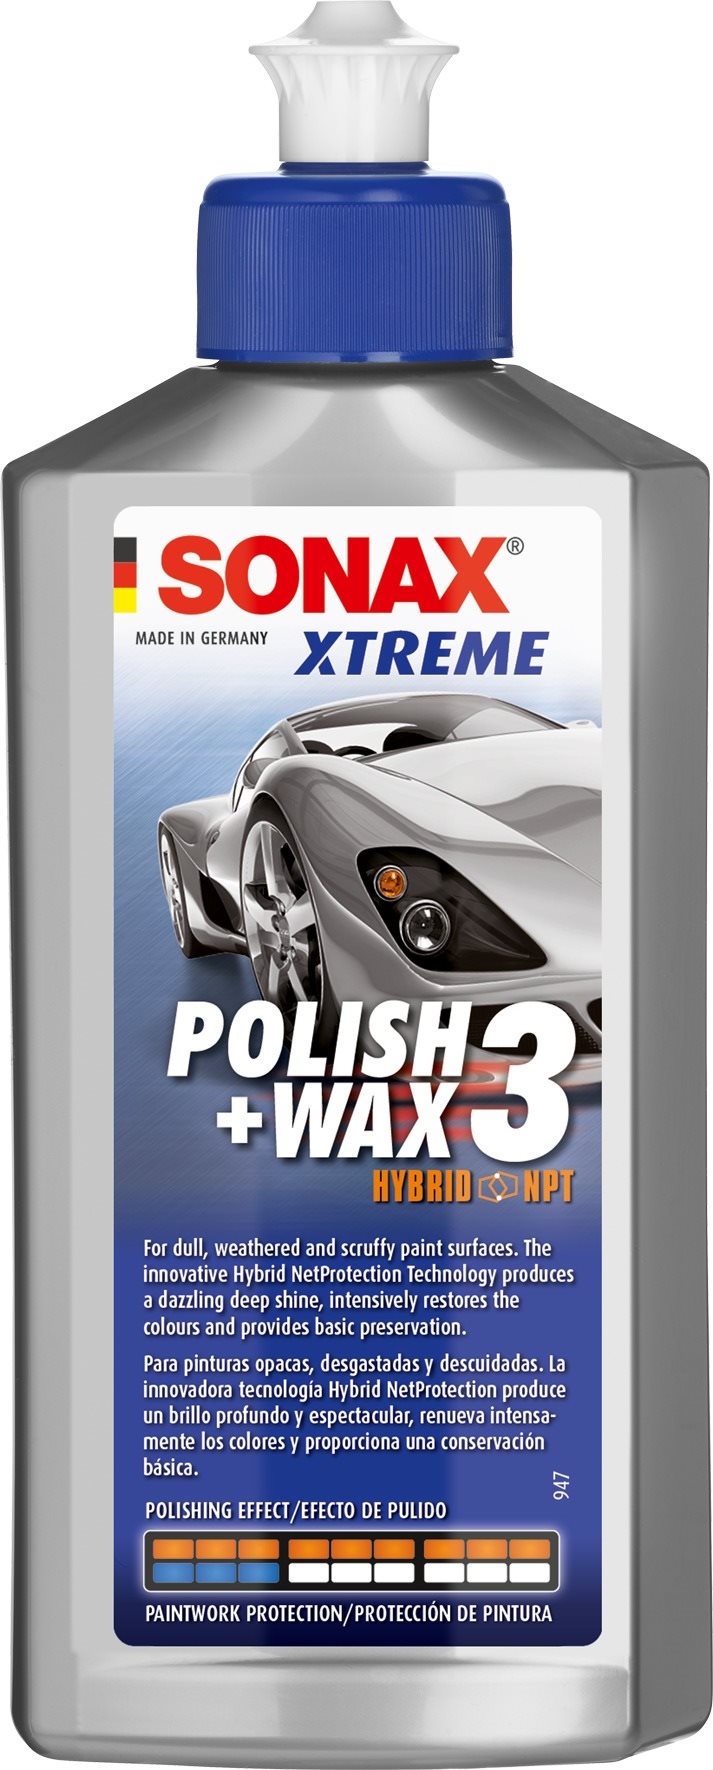 SONAX Xtreme Polish & Wax 3 fényesítő 250 ml-es autó kozmetikai termék